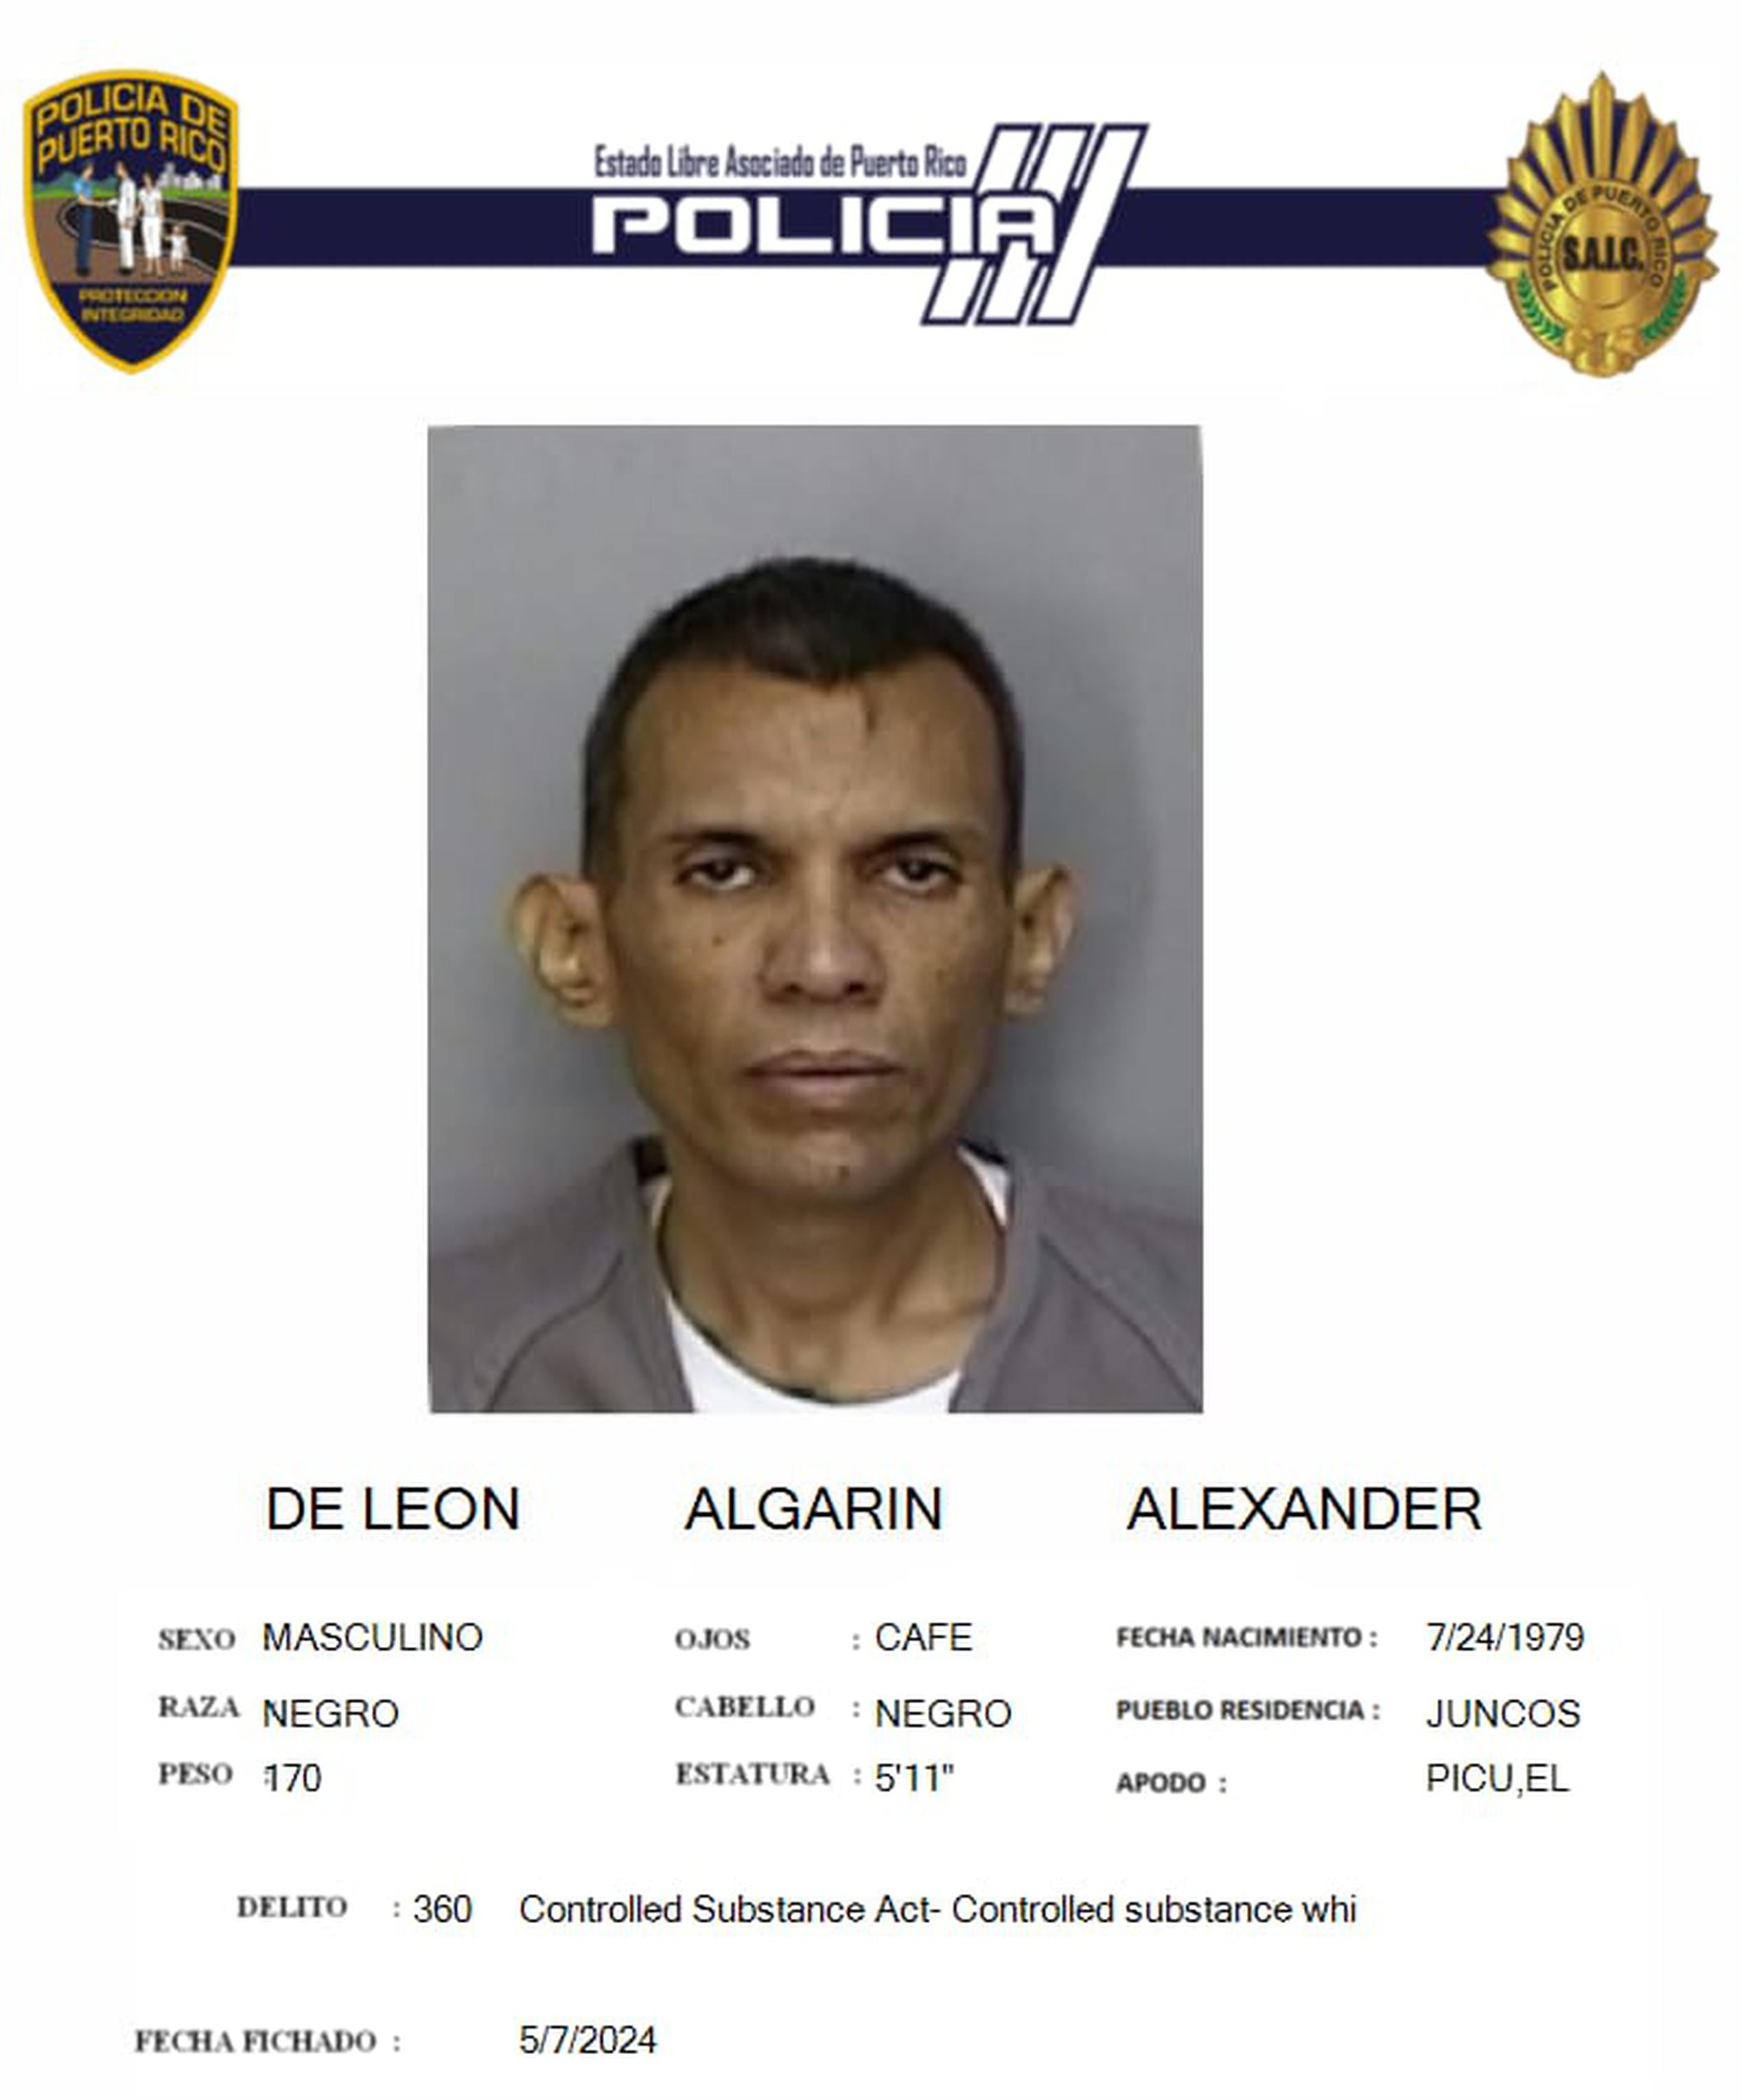 El confinado Alexander De León Algarín enfrenta cargos por violación a la Ley de Sustancias Controladas.